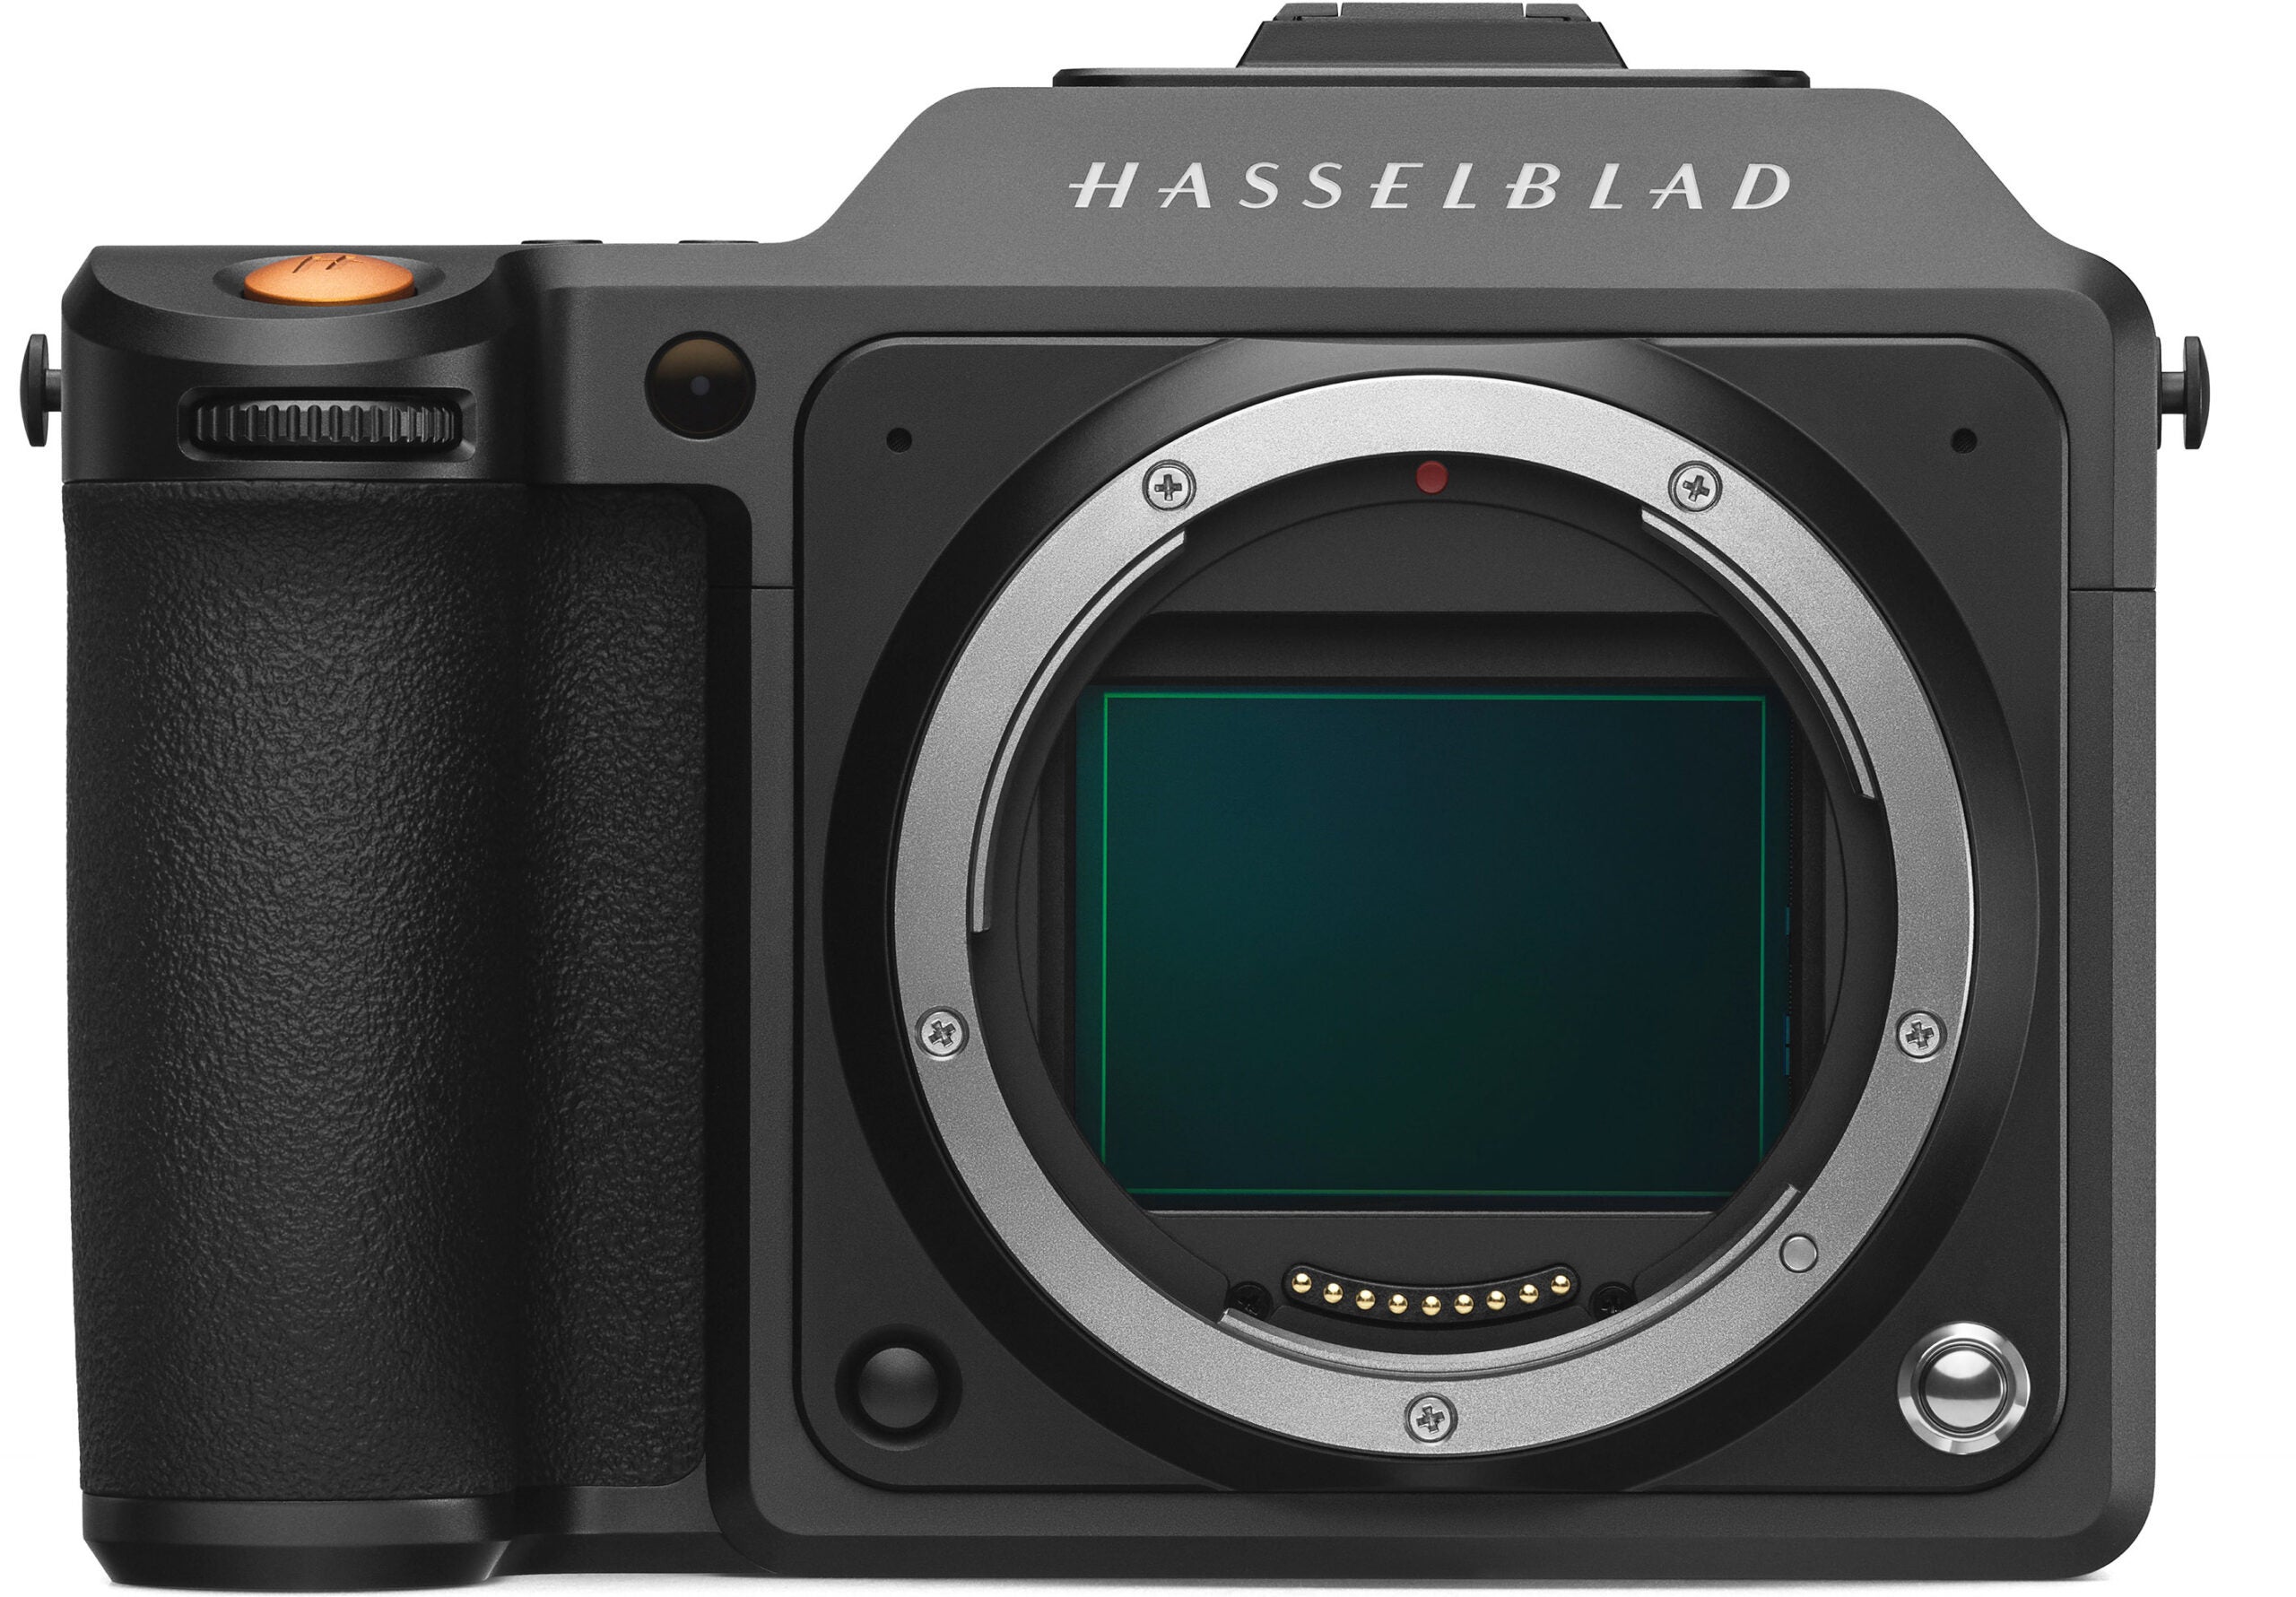 Hasselblad's new X2D 100C